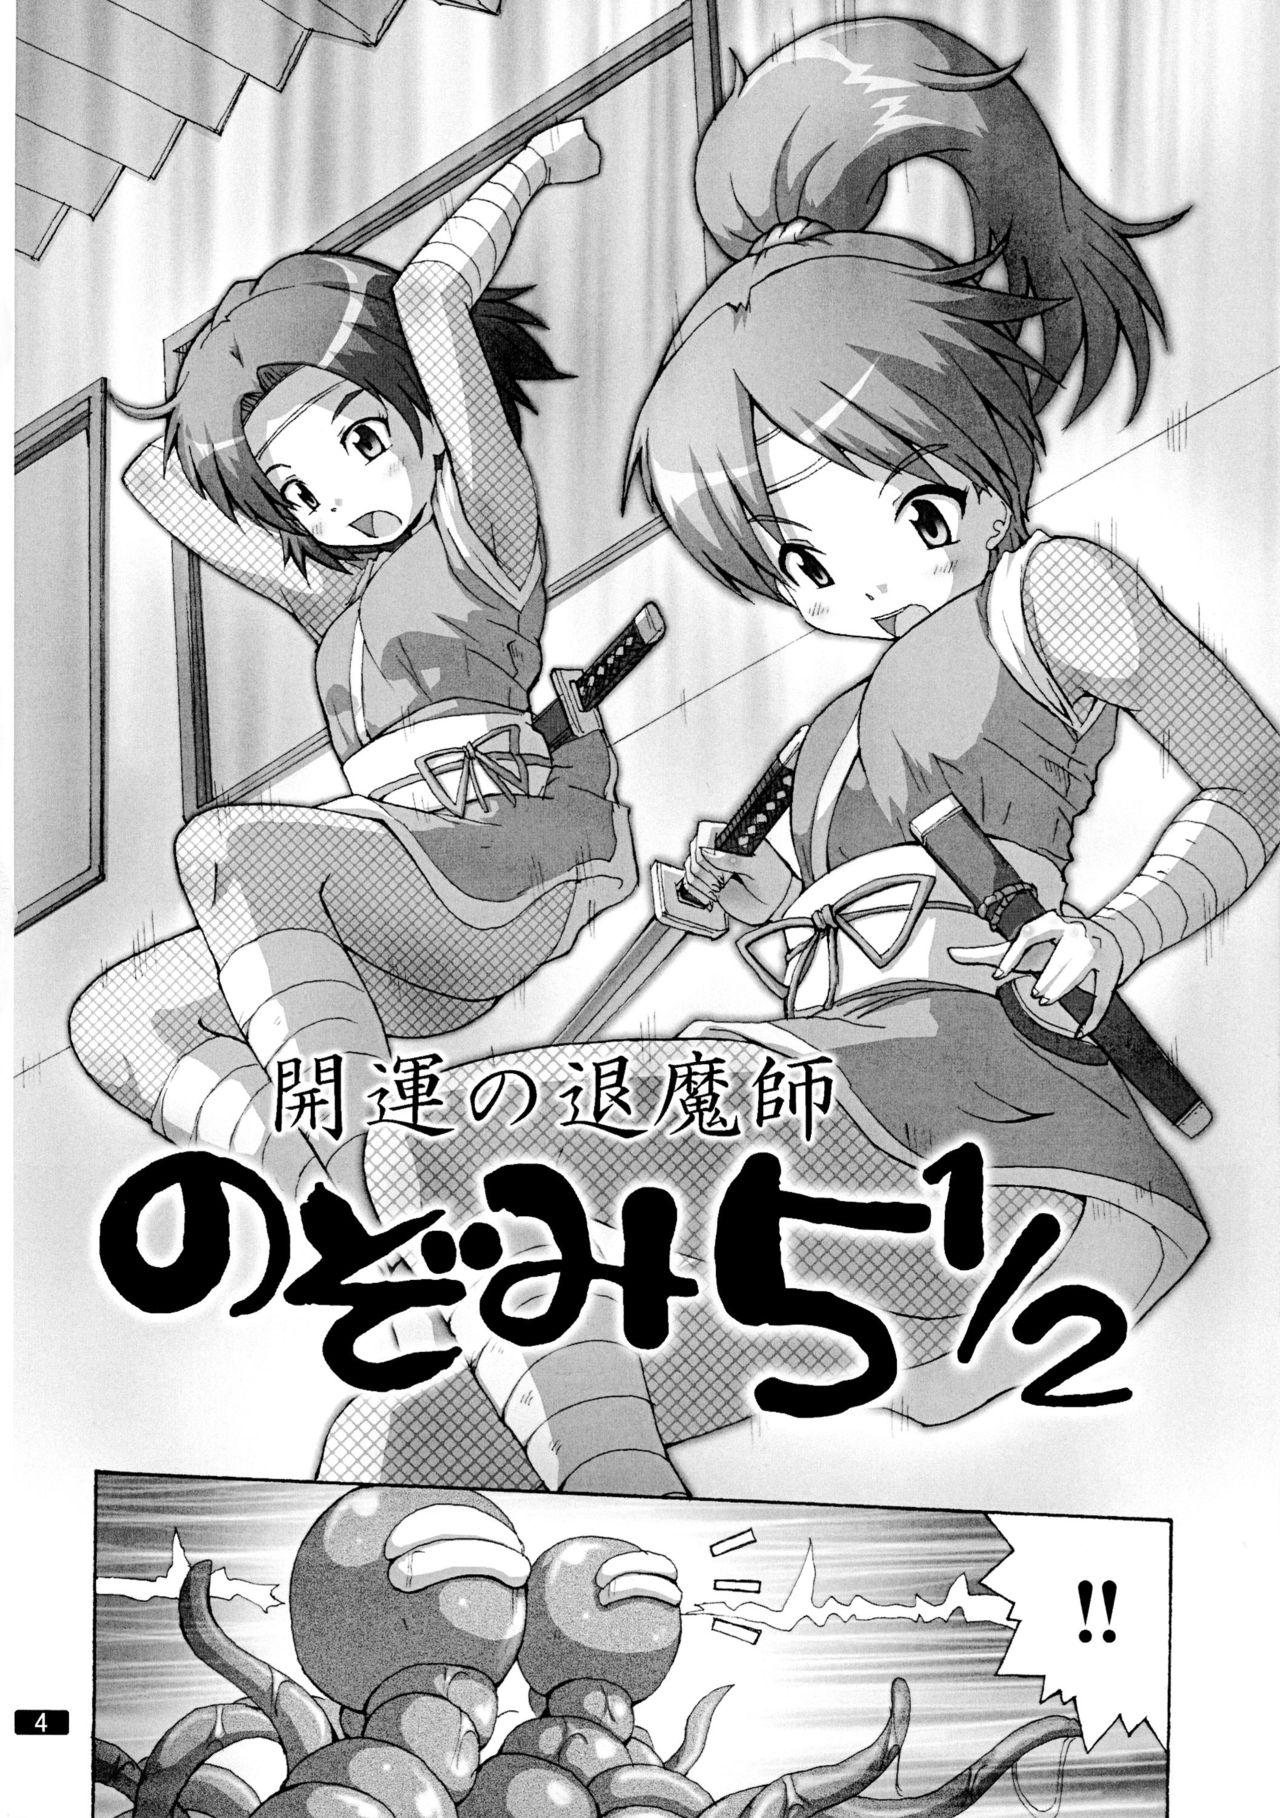 Anime Kaiun no Taimashi Nozomi 5 1/ 2 Highschool - Page 4